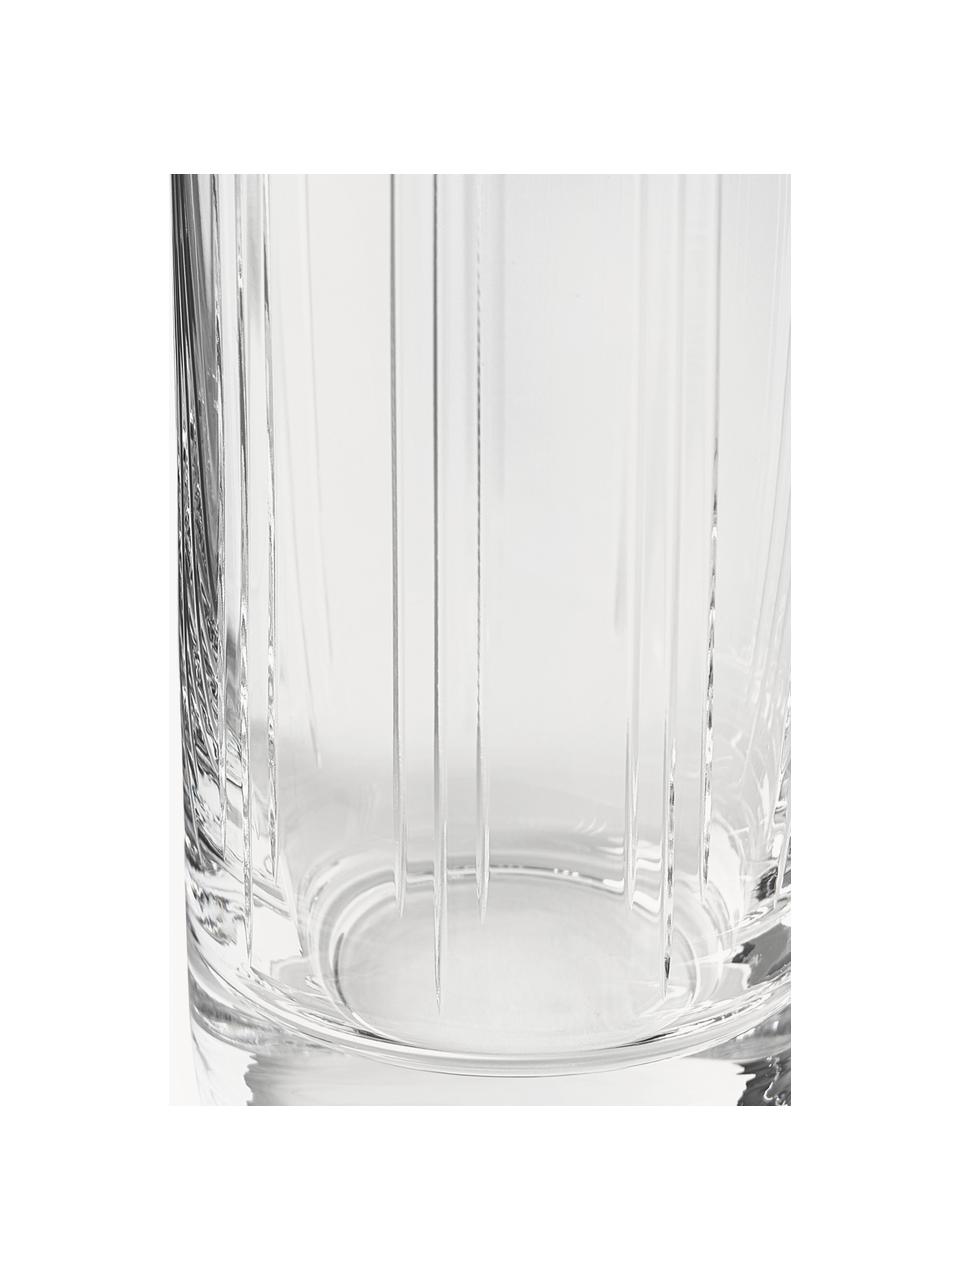 Kristall-Longdrinkgläser Felipe, 4 Stück, Kristallglas

Bring den Glanz von Kristallglas auf Deinen Esstisch! Das Glas ist außergewöhnlich transparent und schwer, dadurch fühlt es sich wertig an und sieht gleichzeitig auch noch gut aus. Zudem machen die filigranen Schliffe jedes Stück zu einem besonderen It-Piece, das sowohl praktisch als auch schön ist., Transparent, Ø 6 x H 15 cm, 300 ml